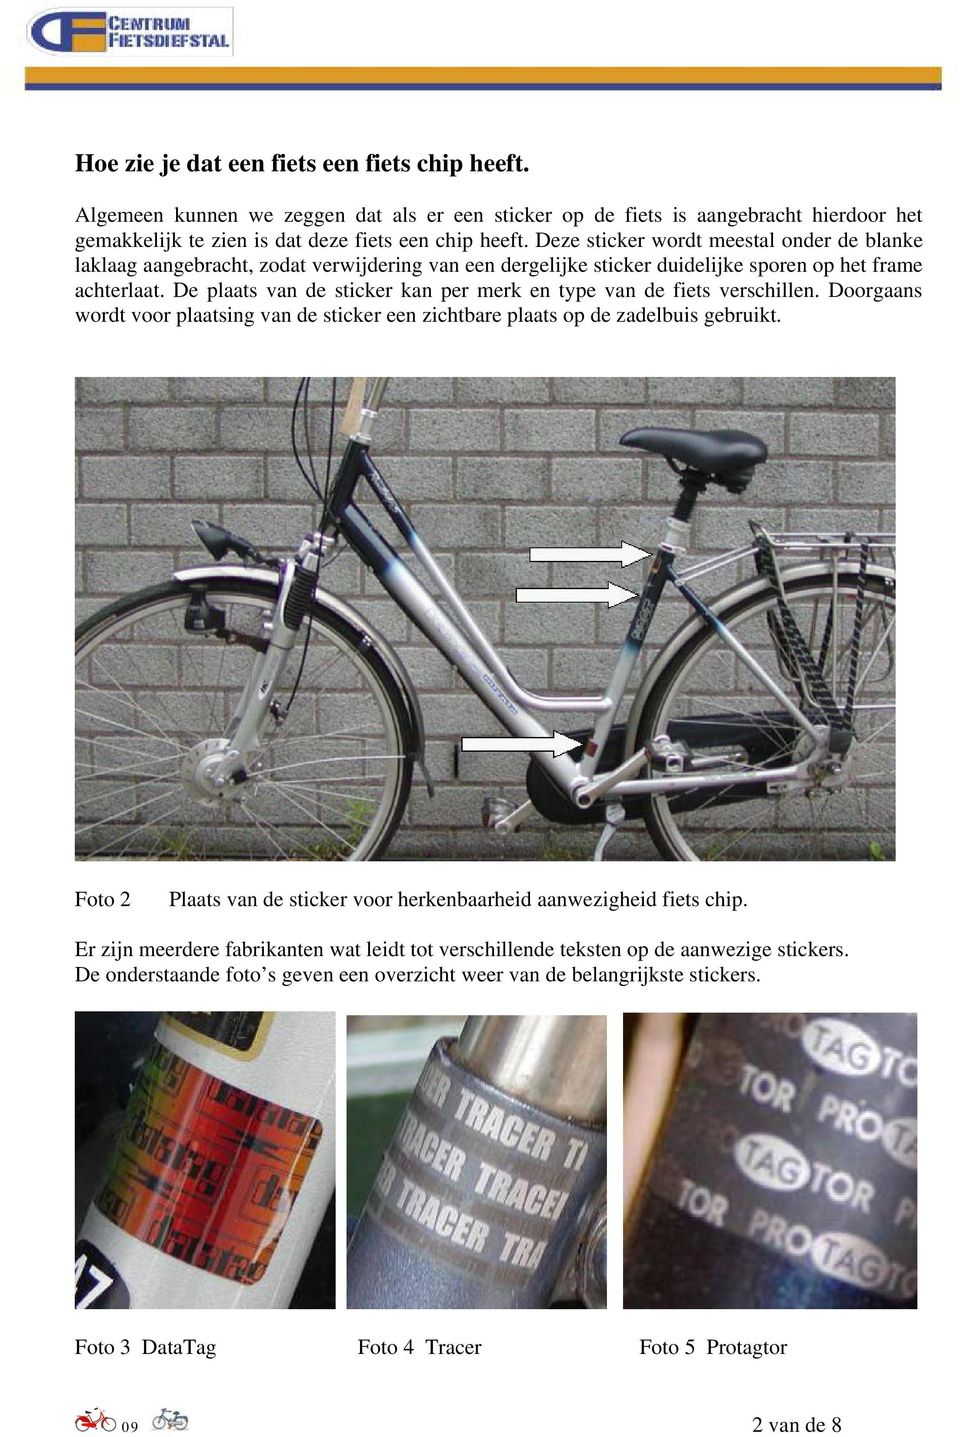 De plaats van de sticker kan per merk en type van de fiets verschillen. Doorgaans wordt voor plaatsing van de sticker een zichtbare plaats op de zadelbuis gebruikt.